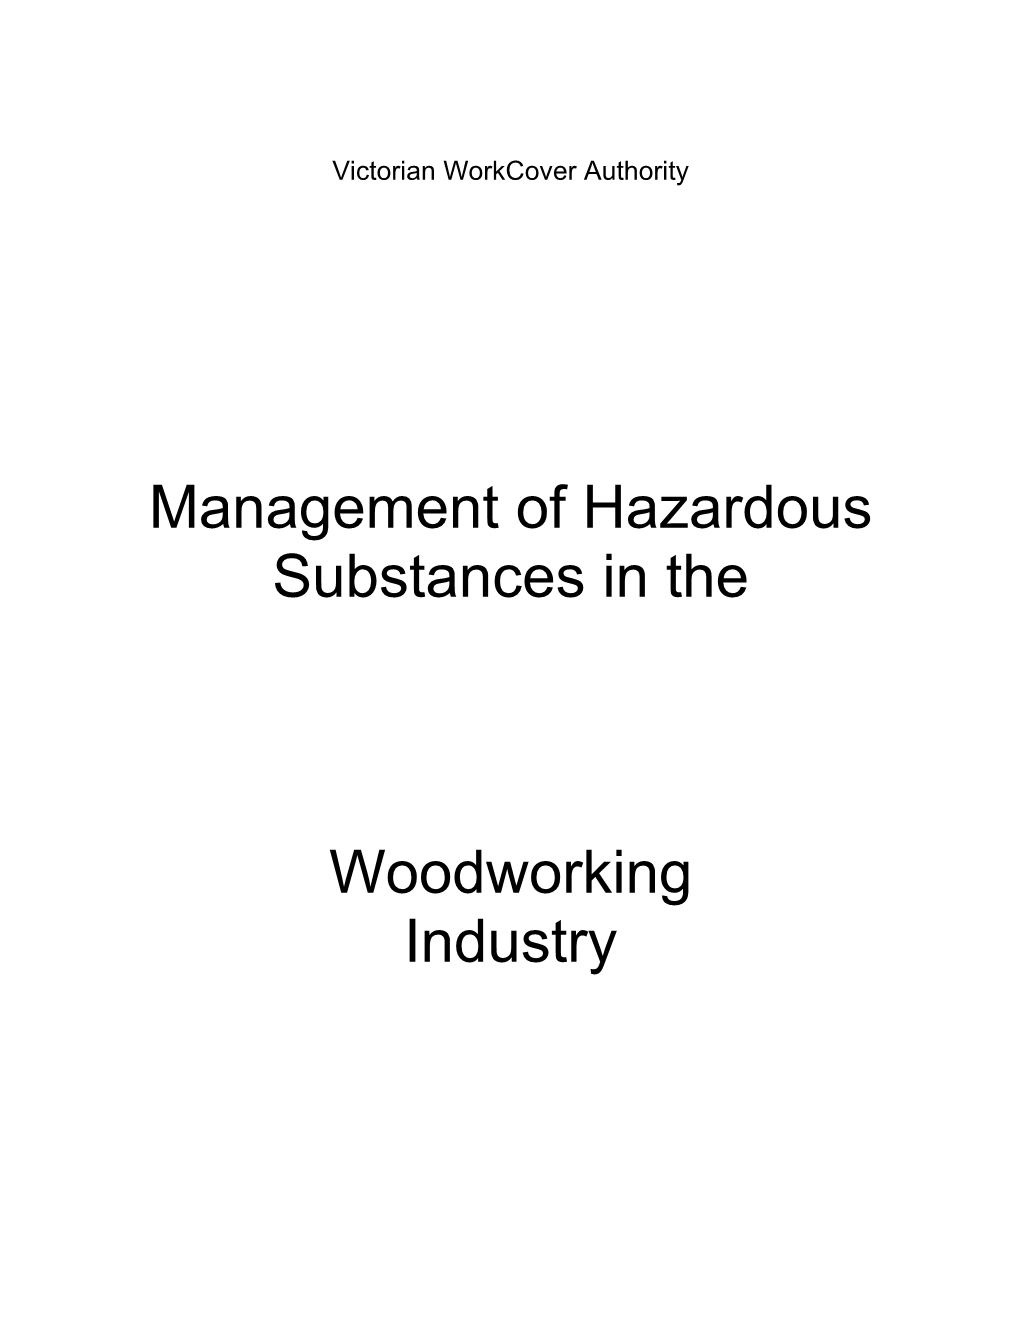 Management of Hazardous Substances in The